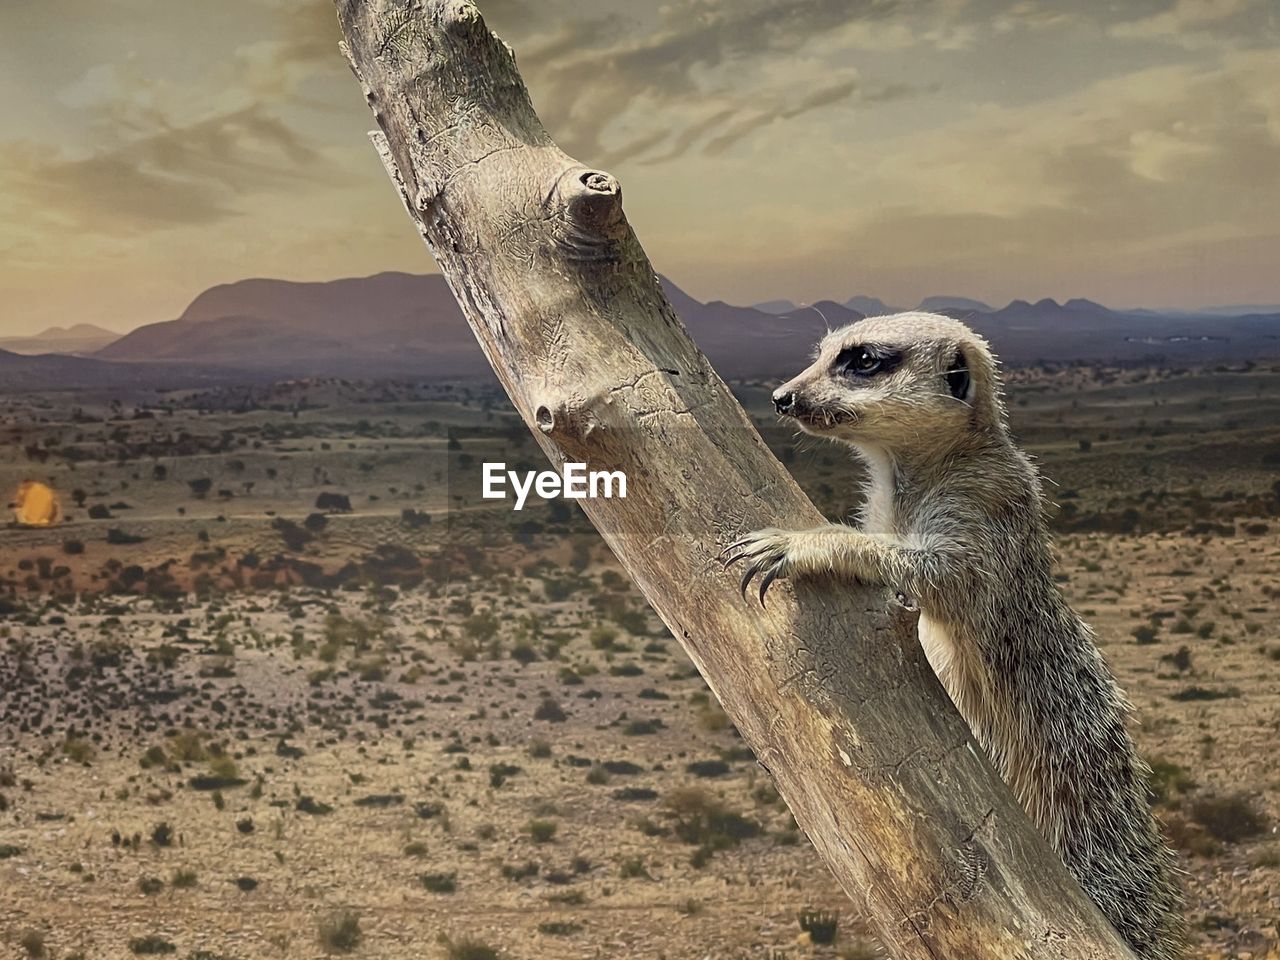 Mother meerkat keeping watch